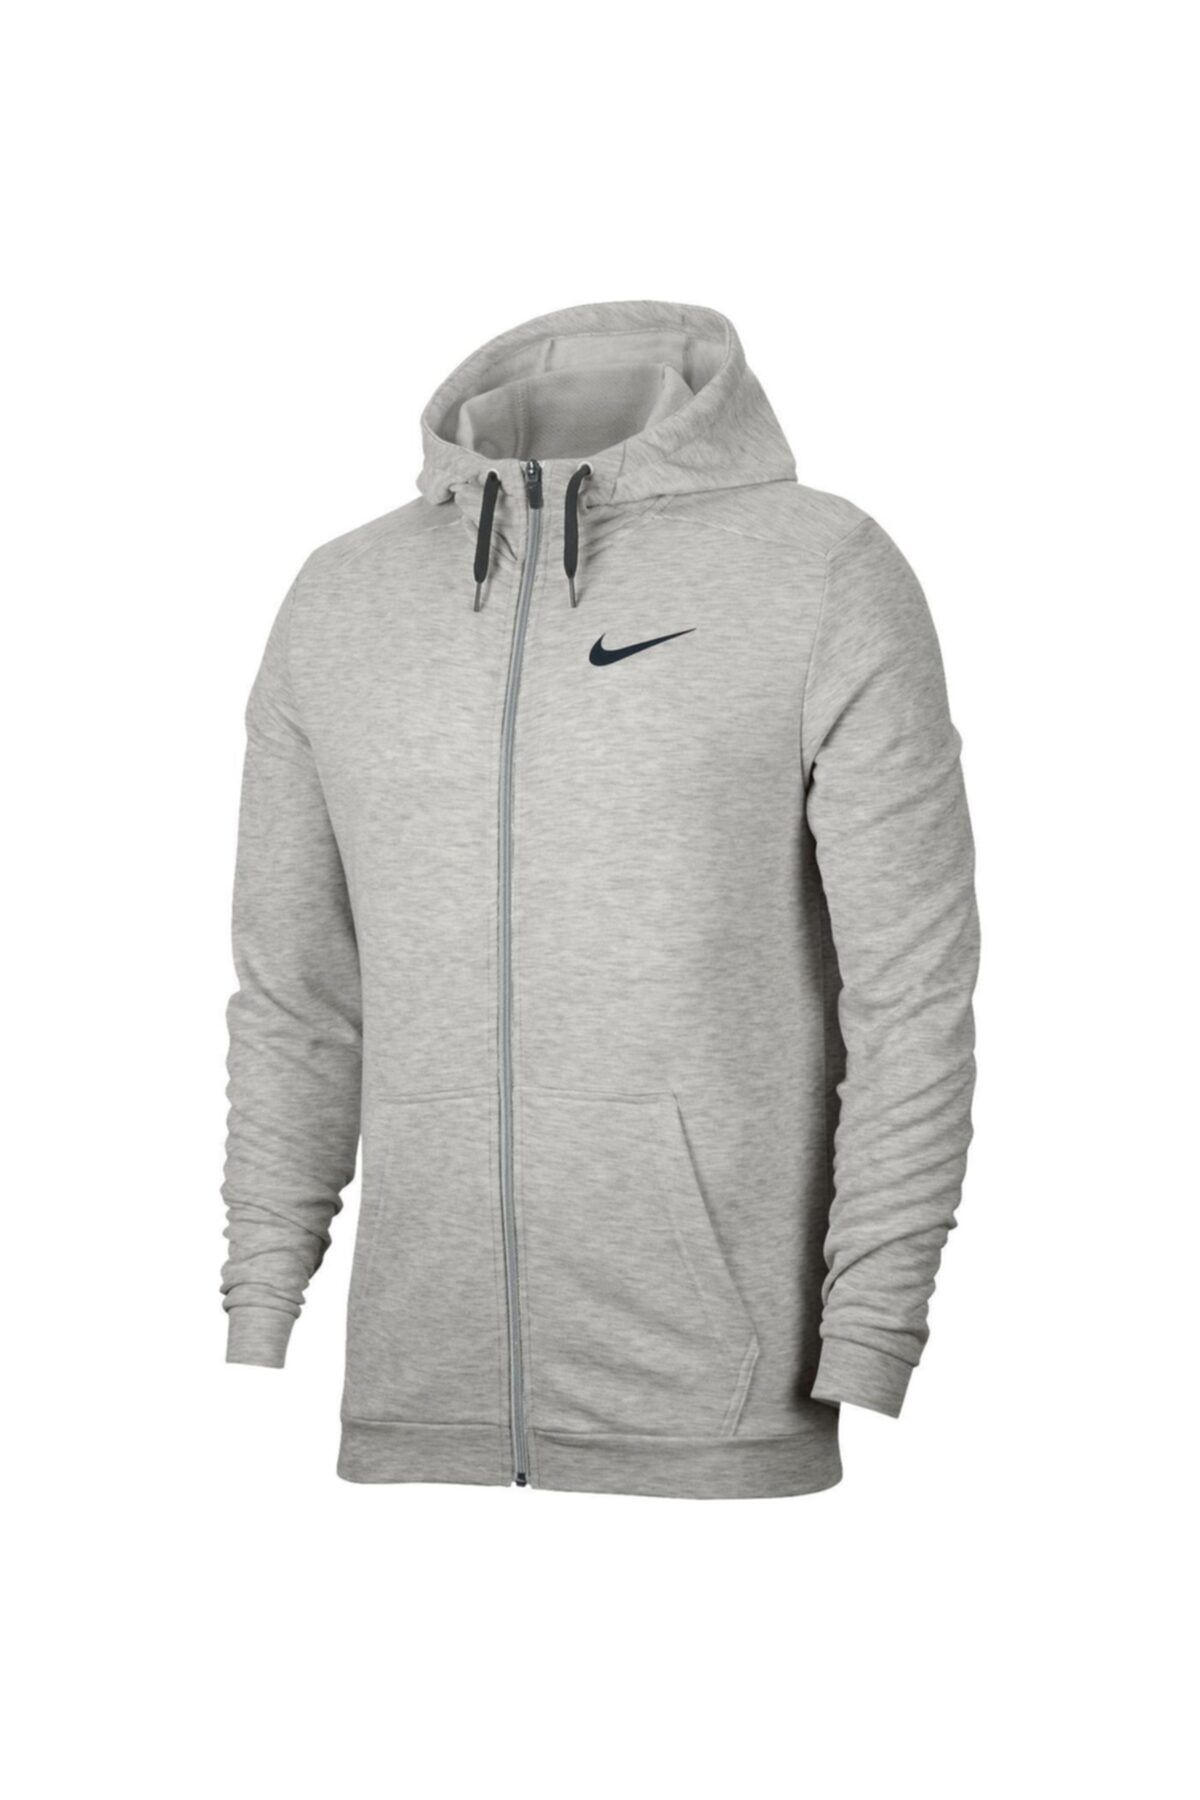 Nike Dry Erkek Gri Antrenman Sweatshirt Cj4317-063